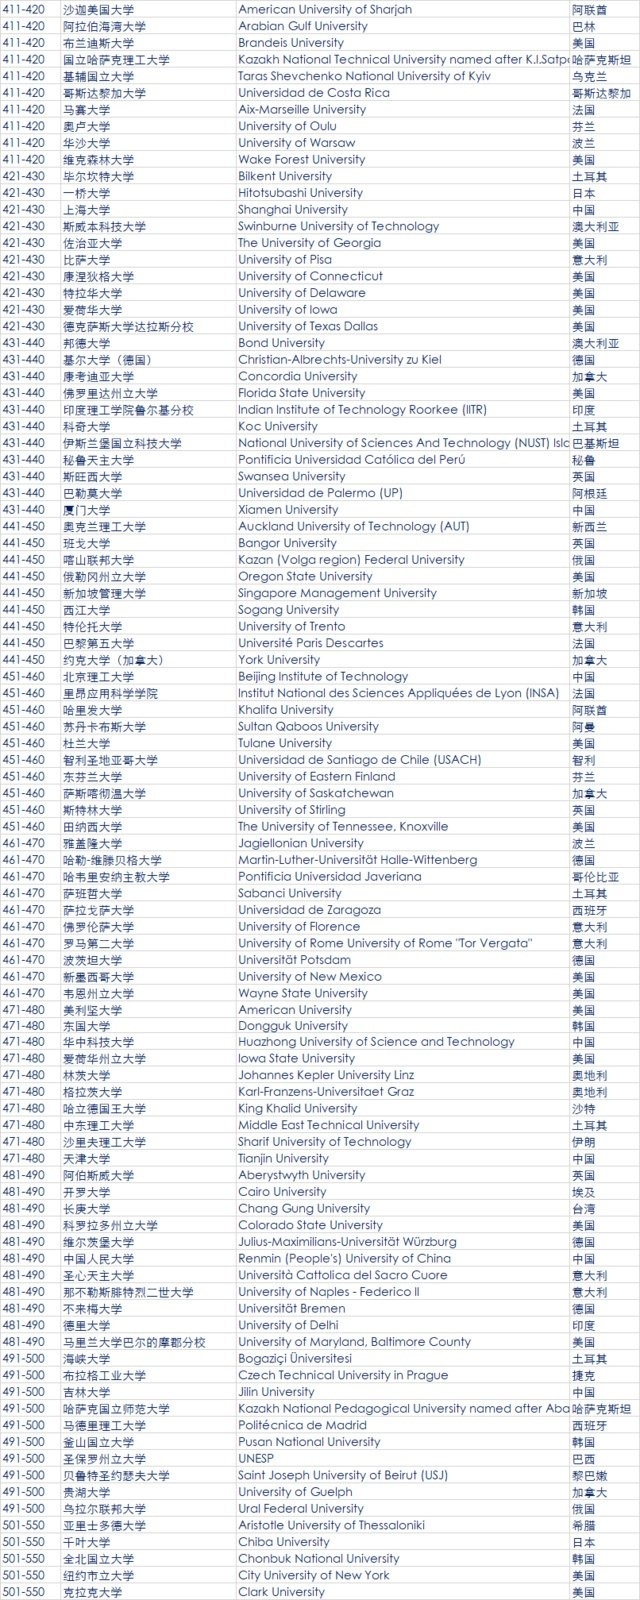 最新QS全球大学排名公布 中国大陆39所大学上榜5